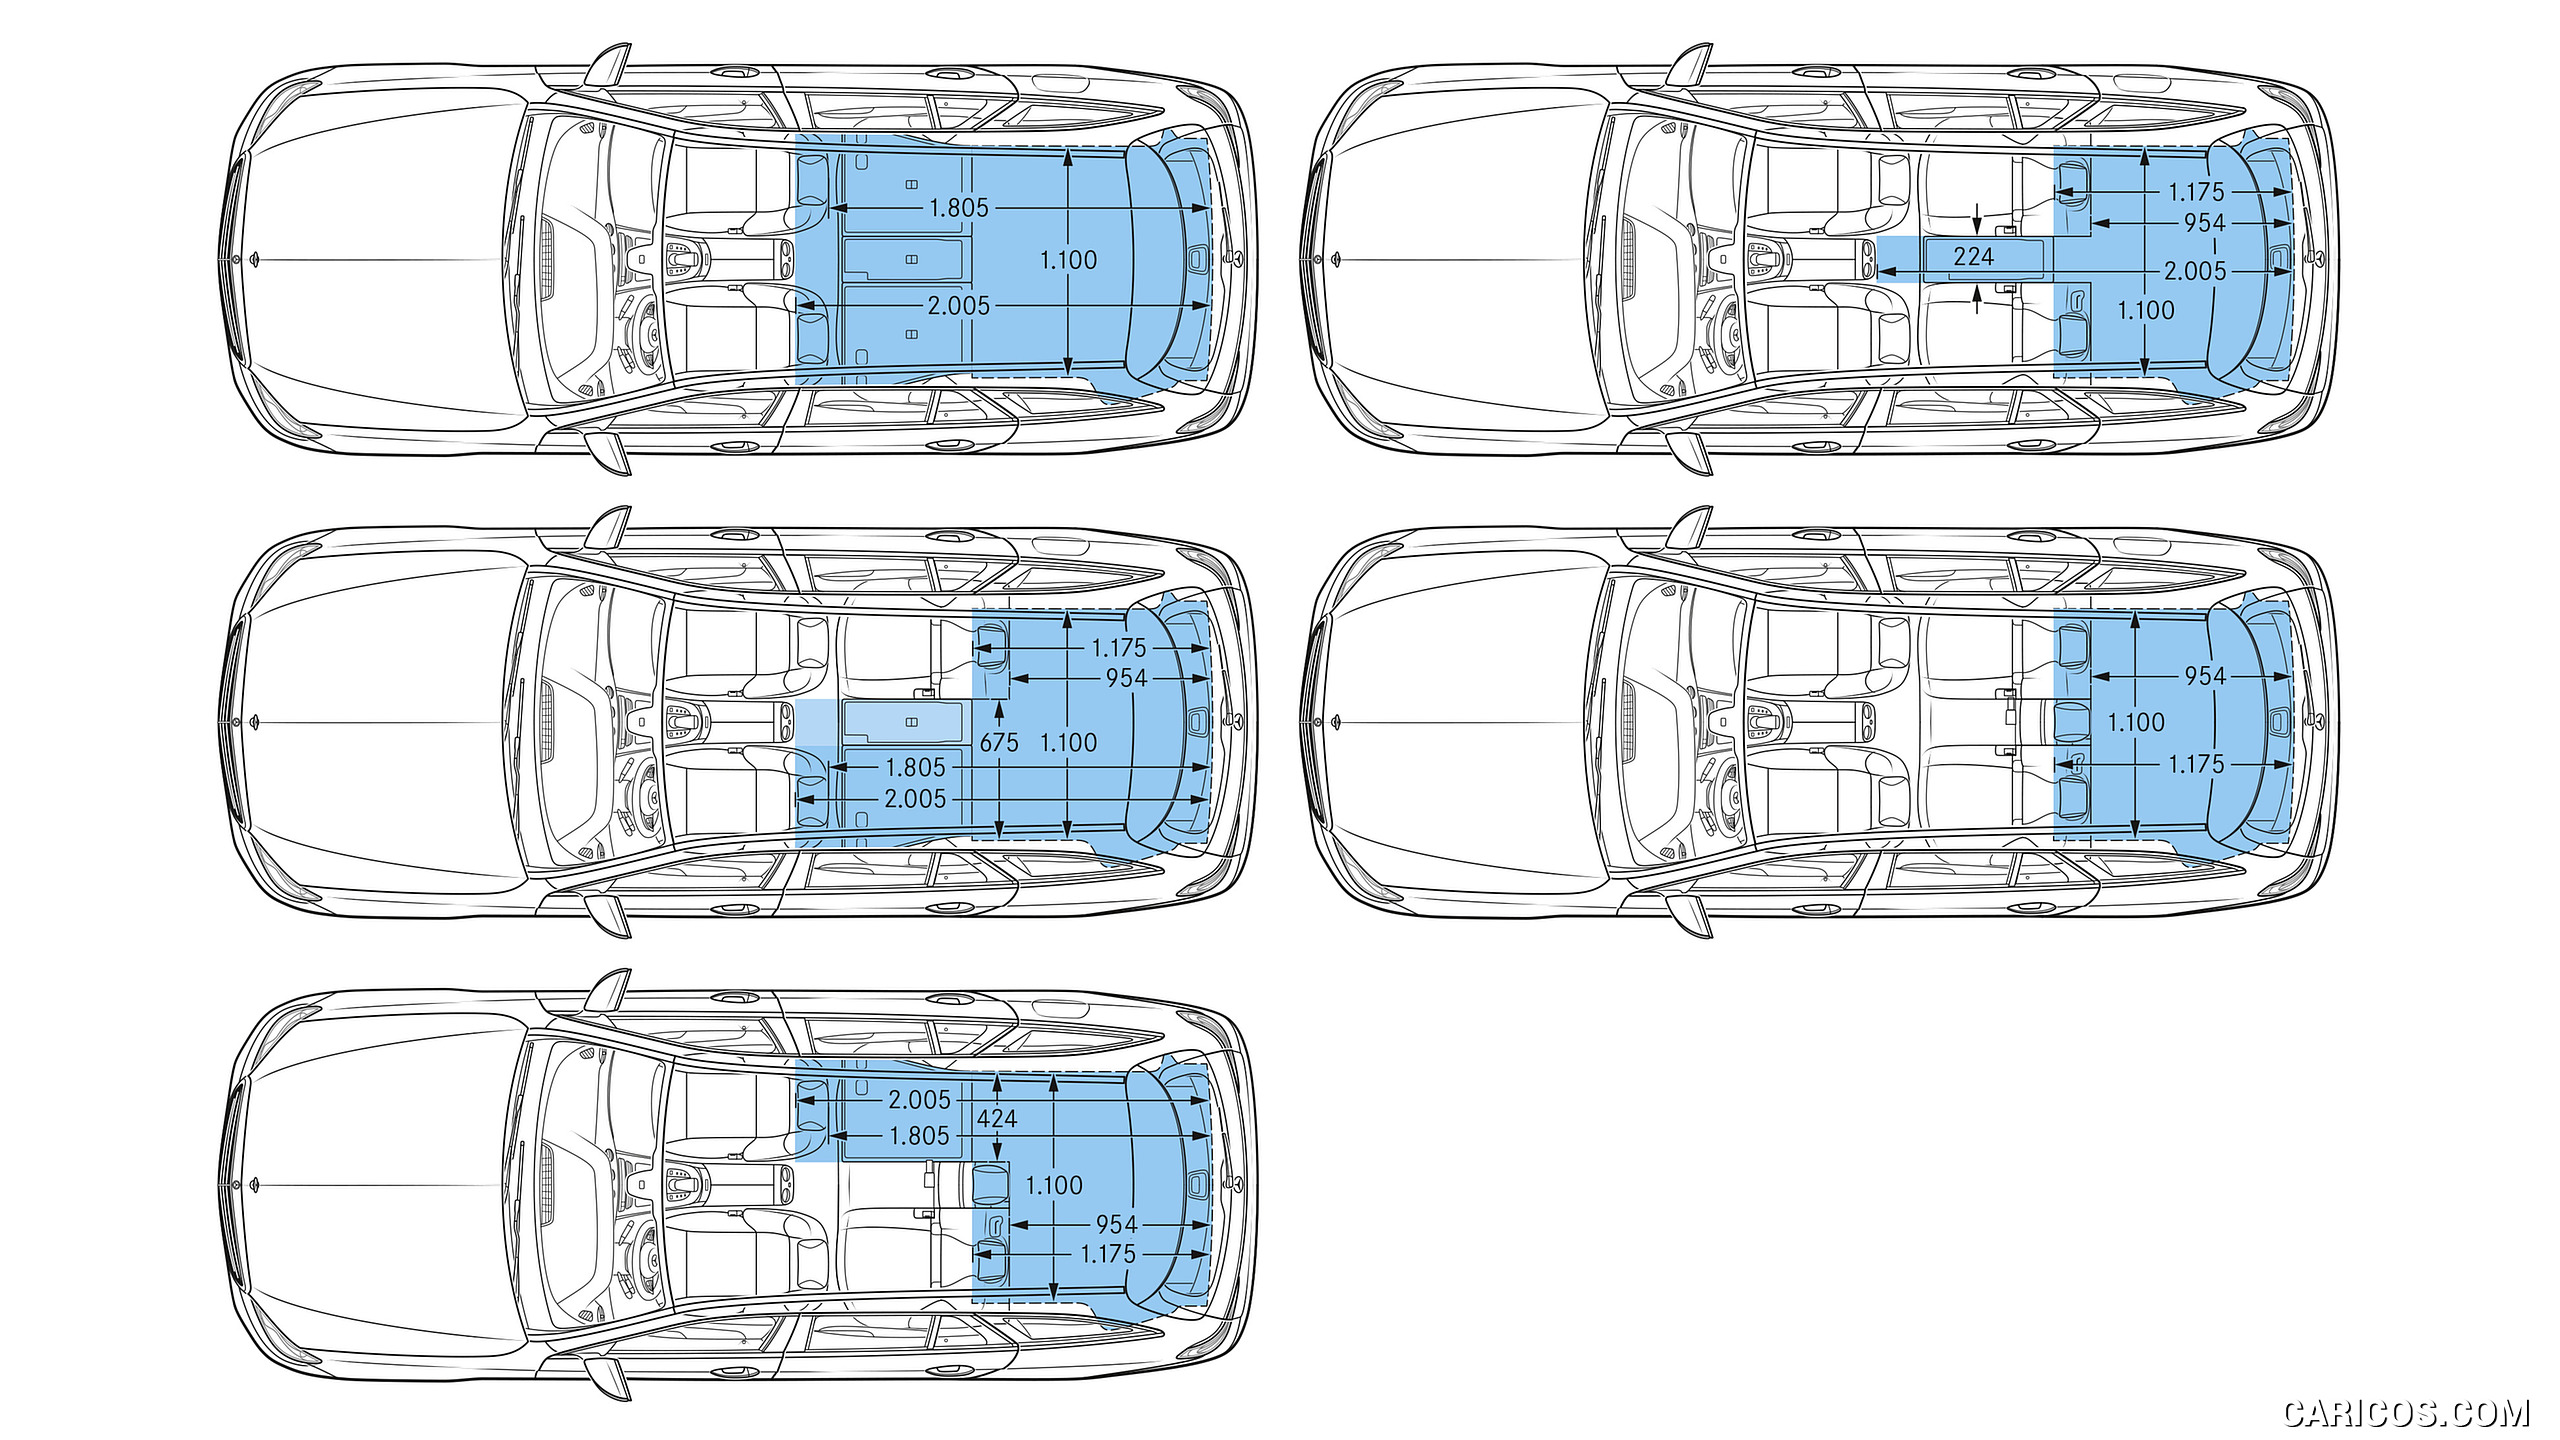 2017 Mercedes-Benz E-Class Estate - Interior Cargo Volume, #79 of 110